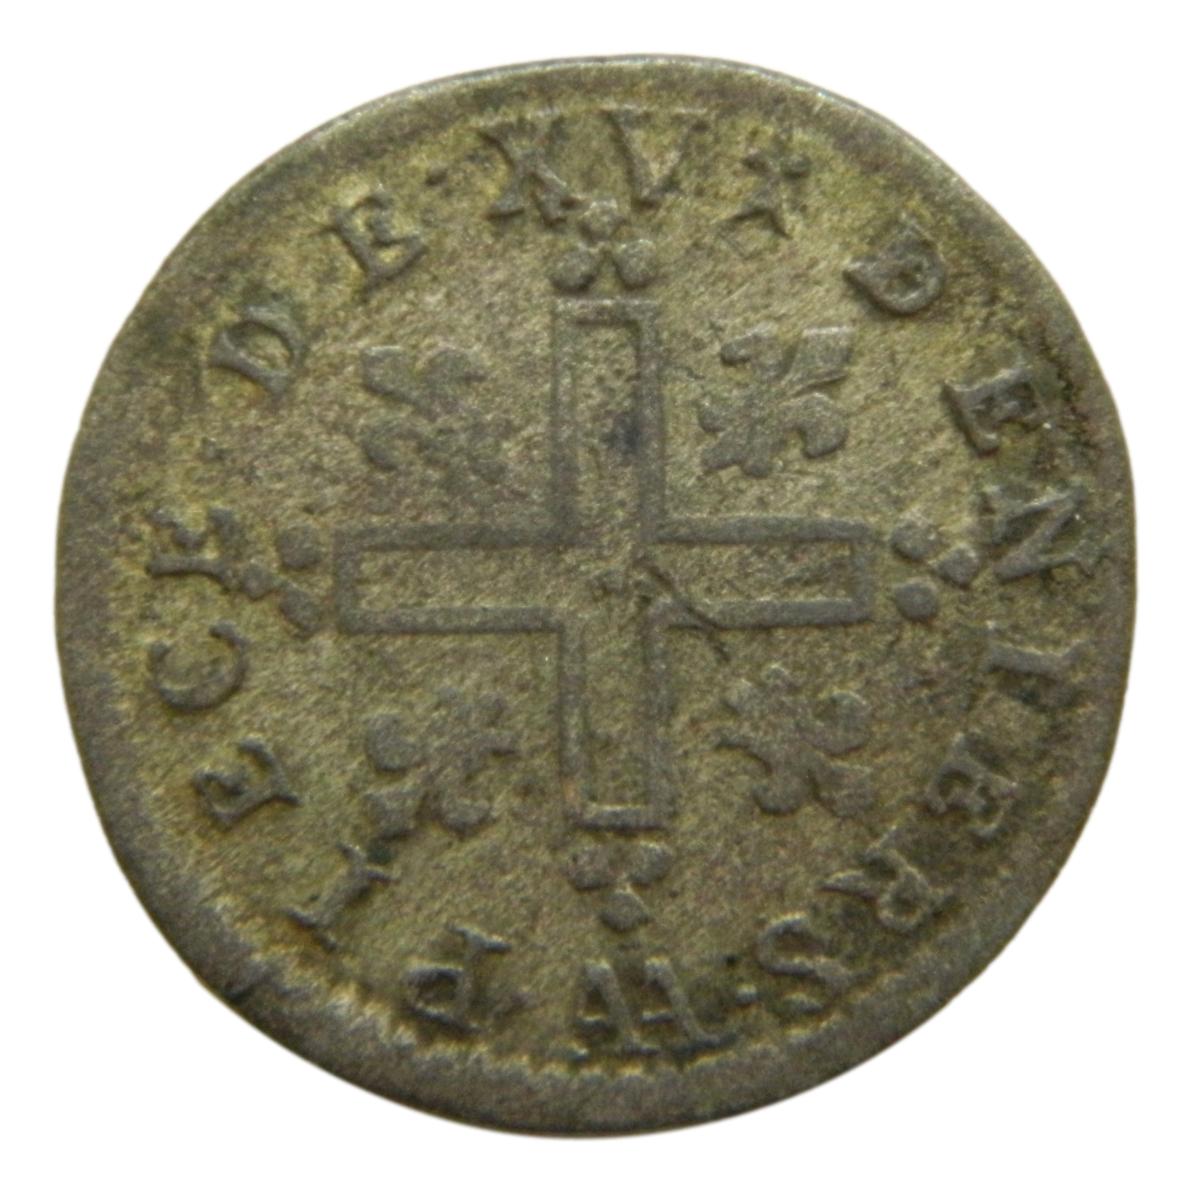 1713 AA - FRANCIA - 15 DENIERS - LOUIS IV - BC - S9/423